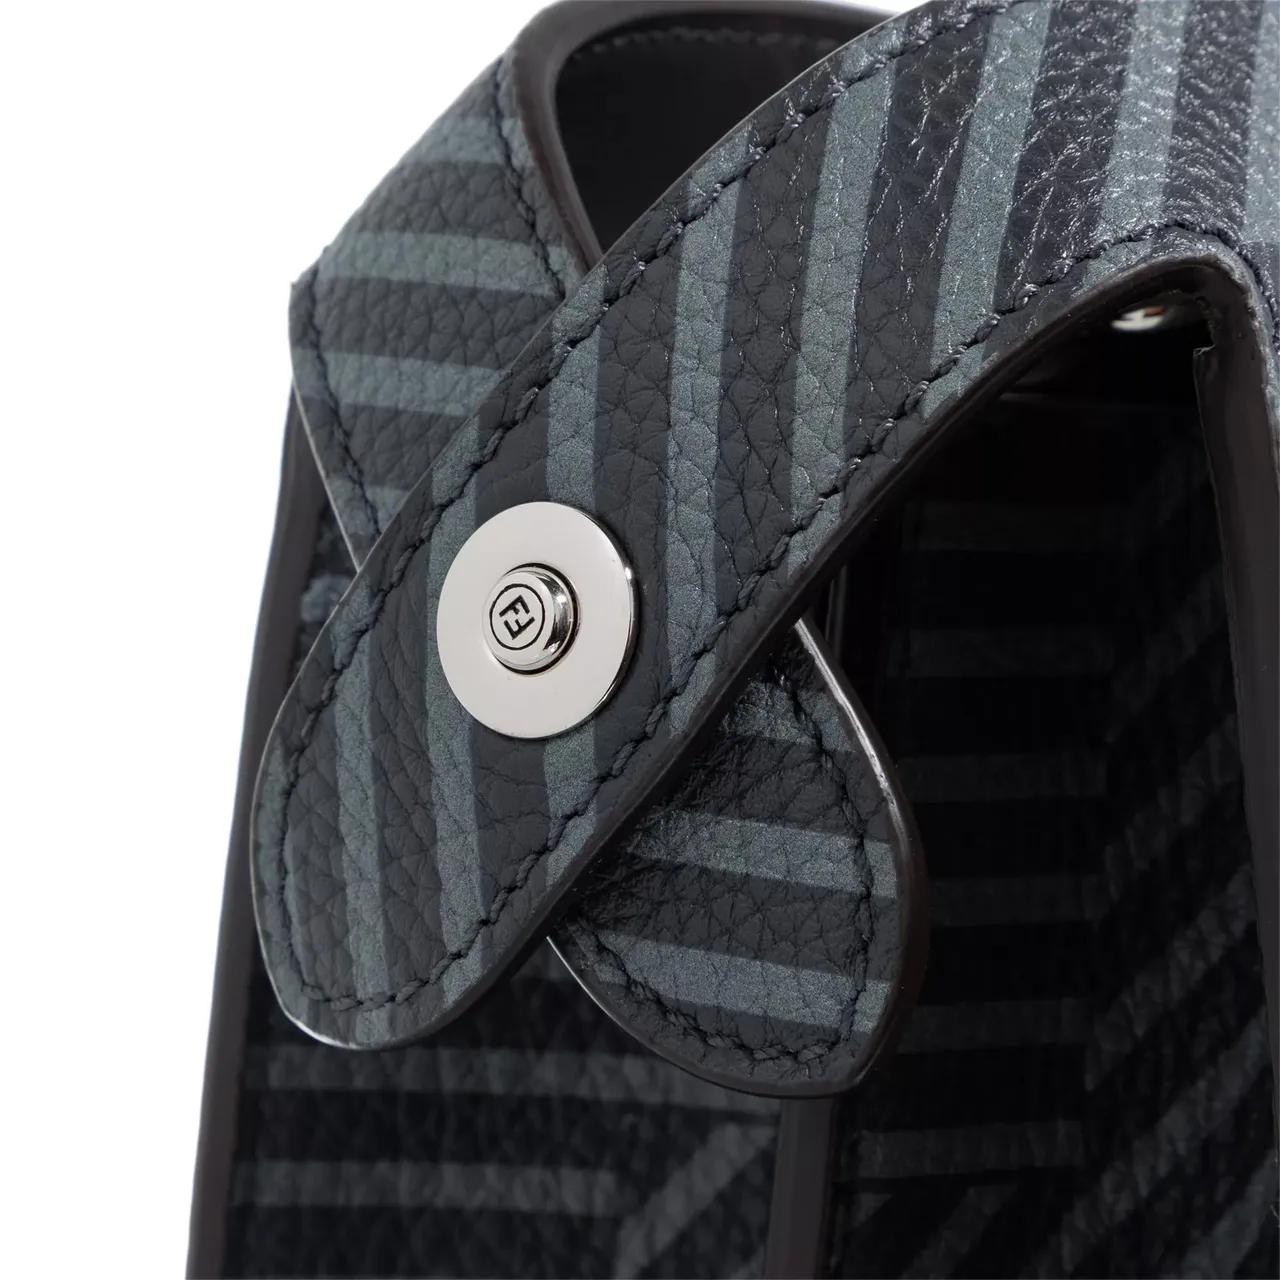 Fendi Aktentaschen - Medium Cuoio Romano Leather Bag - Gr. unisize - in Grau - für Damen